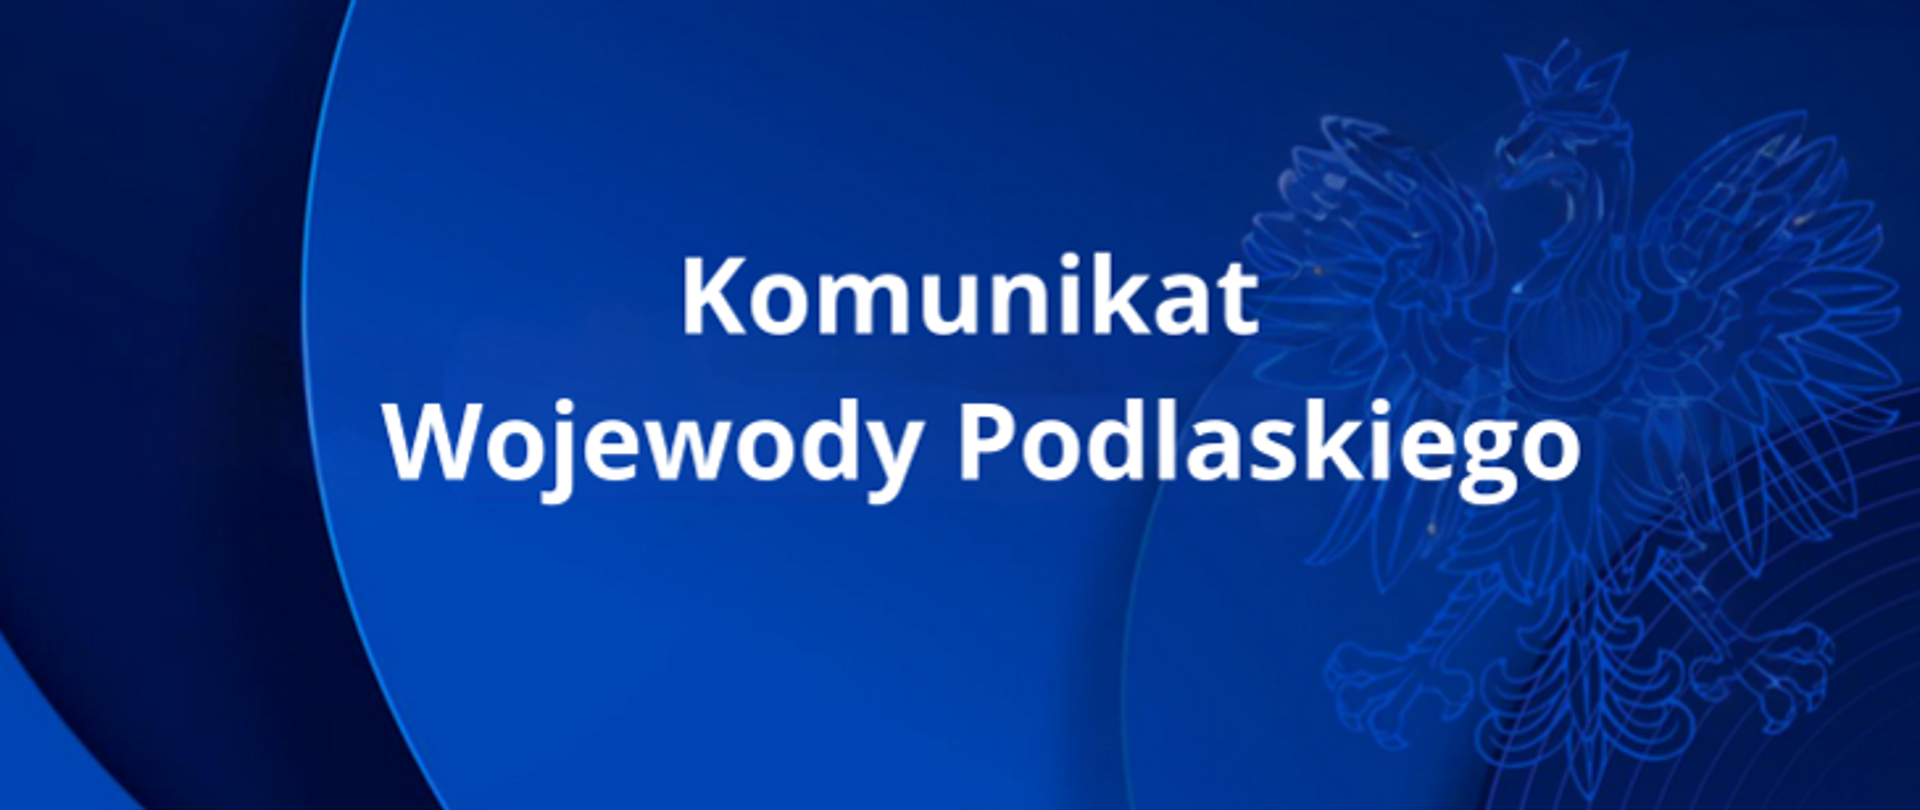 Komunikat Wojewody Podlaskiego